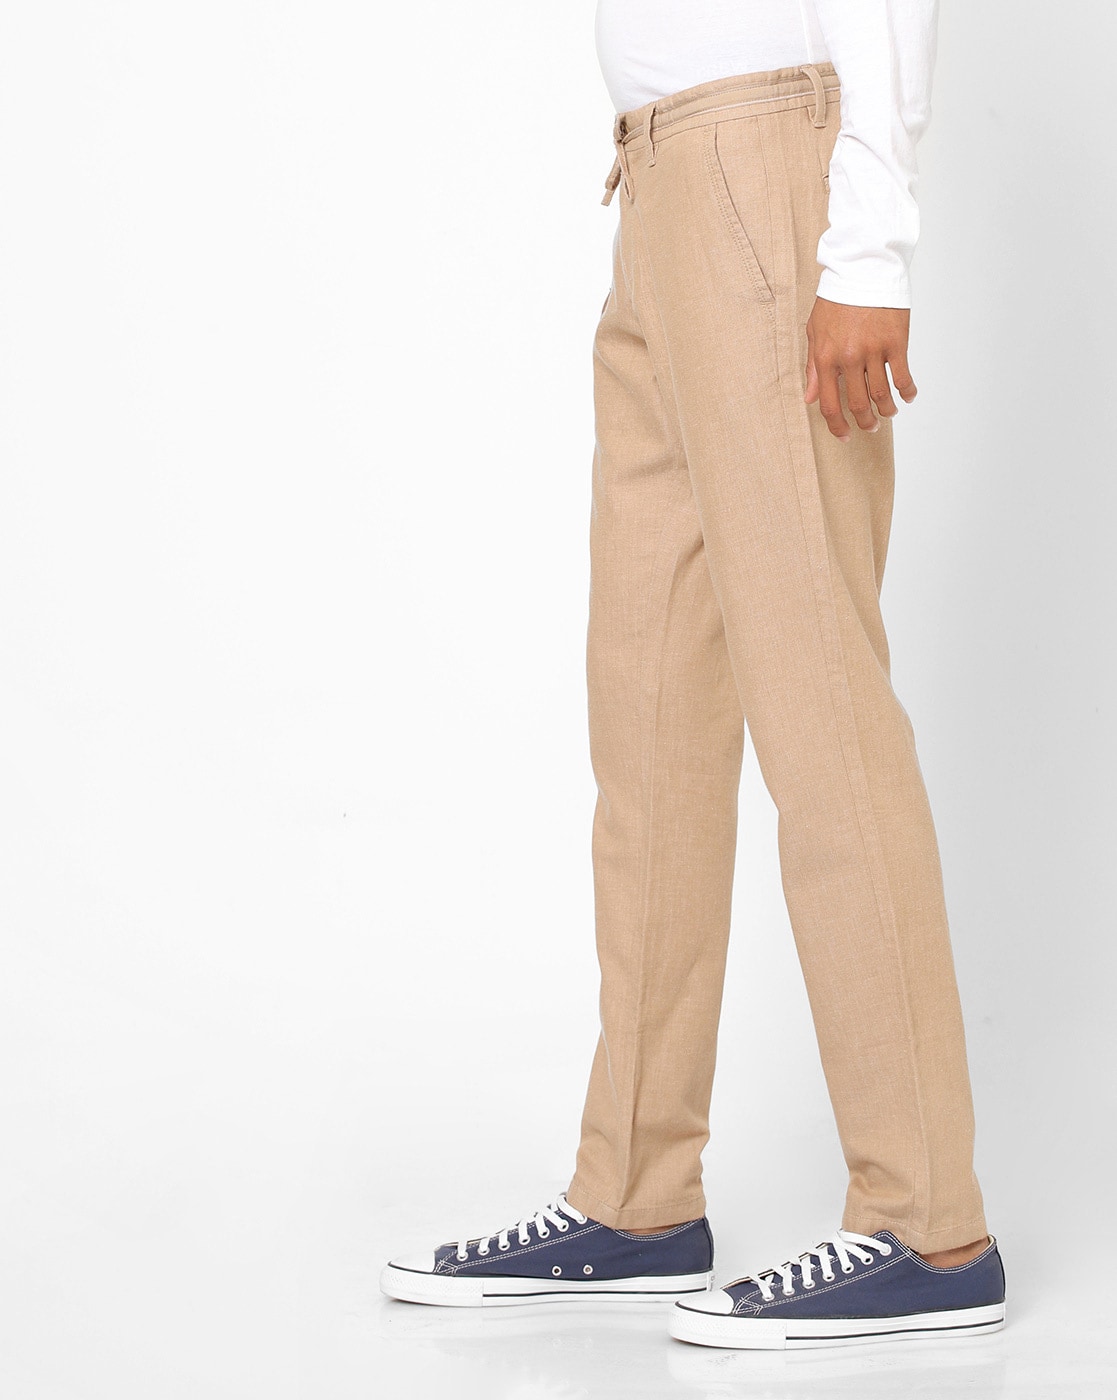 Light Brown Trousers  Buy Light Brown Trousers online in India